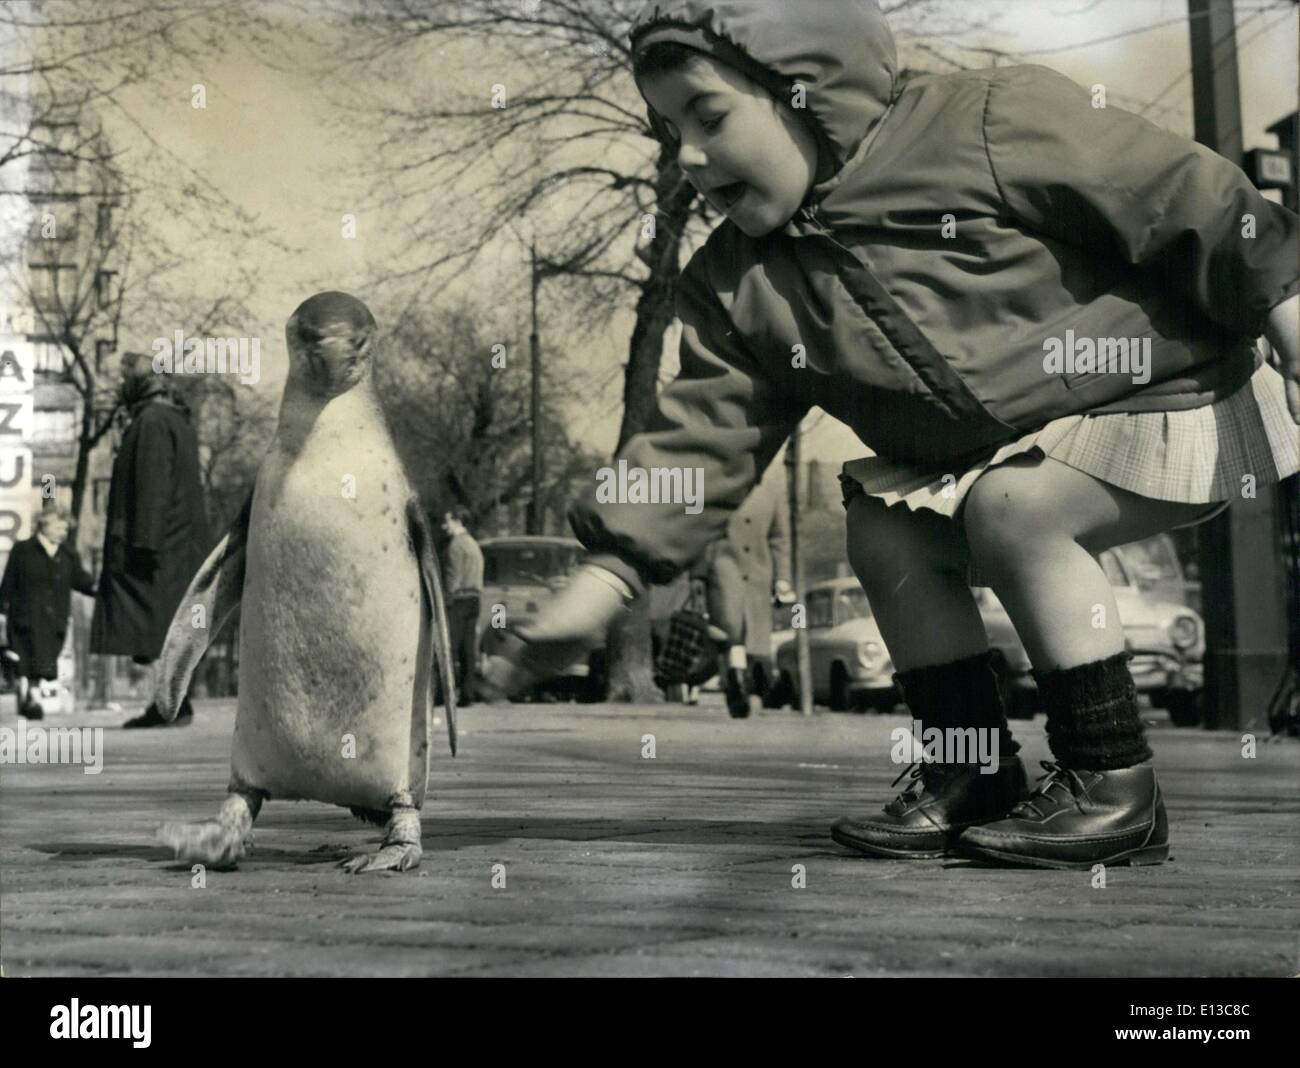 Marzo 02, 2012 - Oscar el Pinguin toma un paseo. Un Pinguin paseando con orgullo en las calles de Paris es un lugar inusual de vista, sin embargo, esto es lo que los parisinos viven en la Porte d'Italie sección puede ver cada mañana. Como ''Oscar'' tiene su paseo diario, un diminuto segura de sí misma cosa entre los transeúntes. ''Oscar'' pertenecen a un tendero quien compró el pájaro del zoológico, criólo y ''uno más de la familia''. OPS: una niña dice ''Hola'' a Oscar. Foto de stock